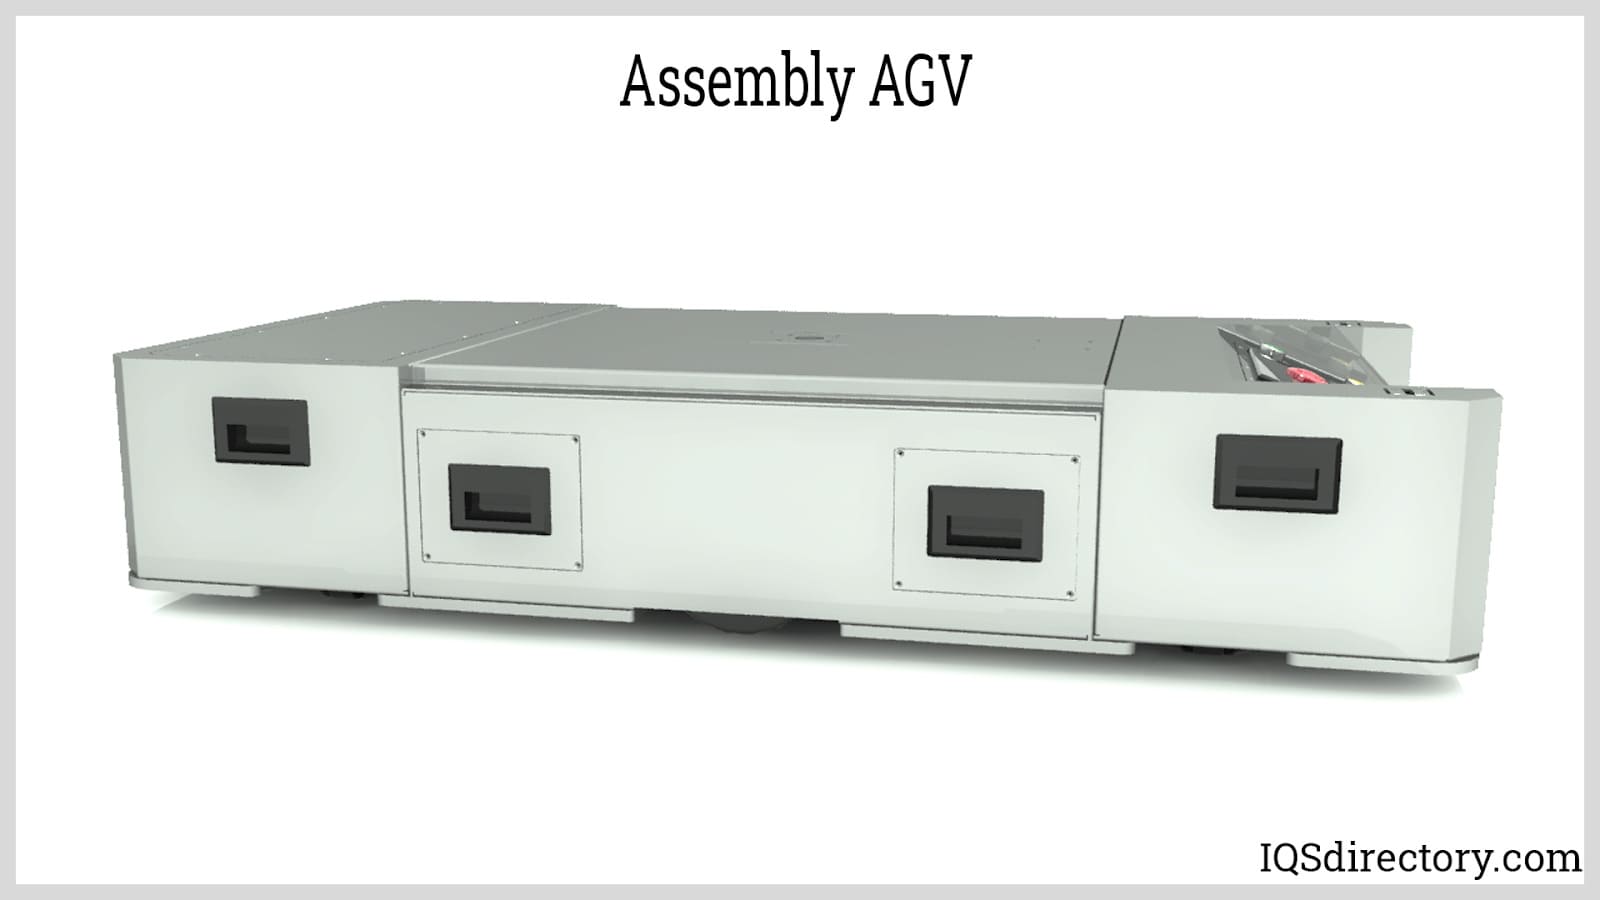 Assembly AGV